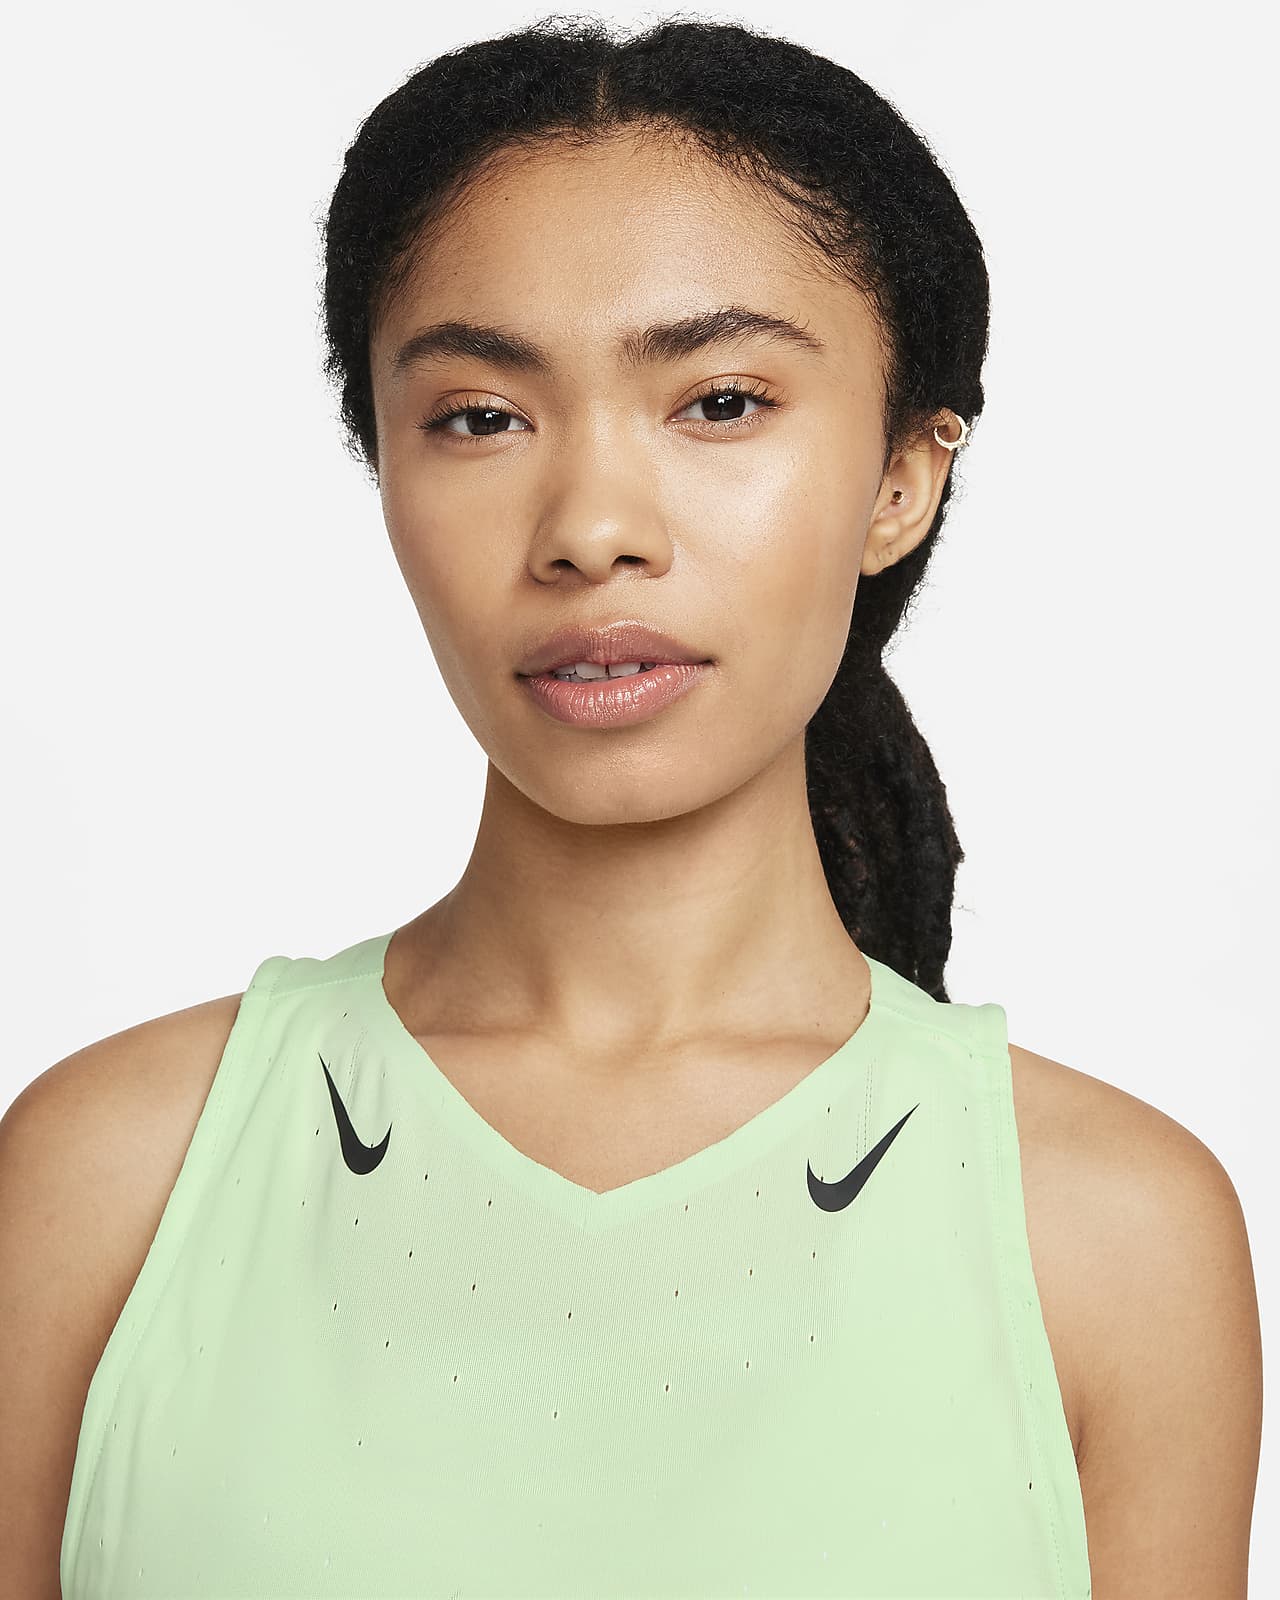 Nike Dri-Fit Adv Aeroswift Singlet Womens